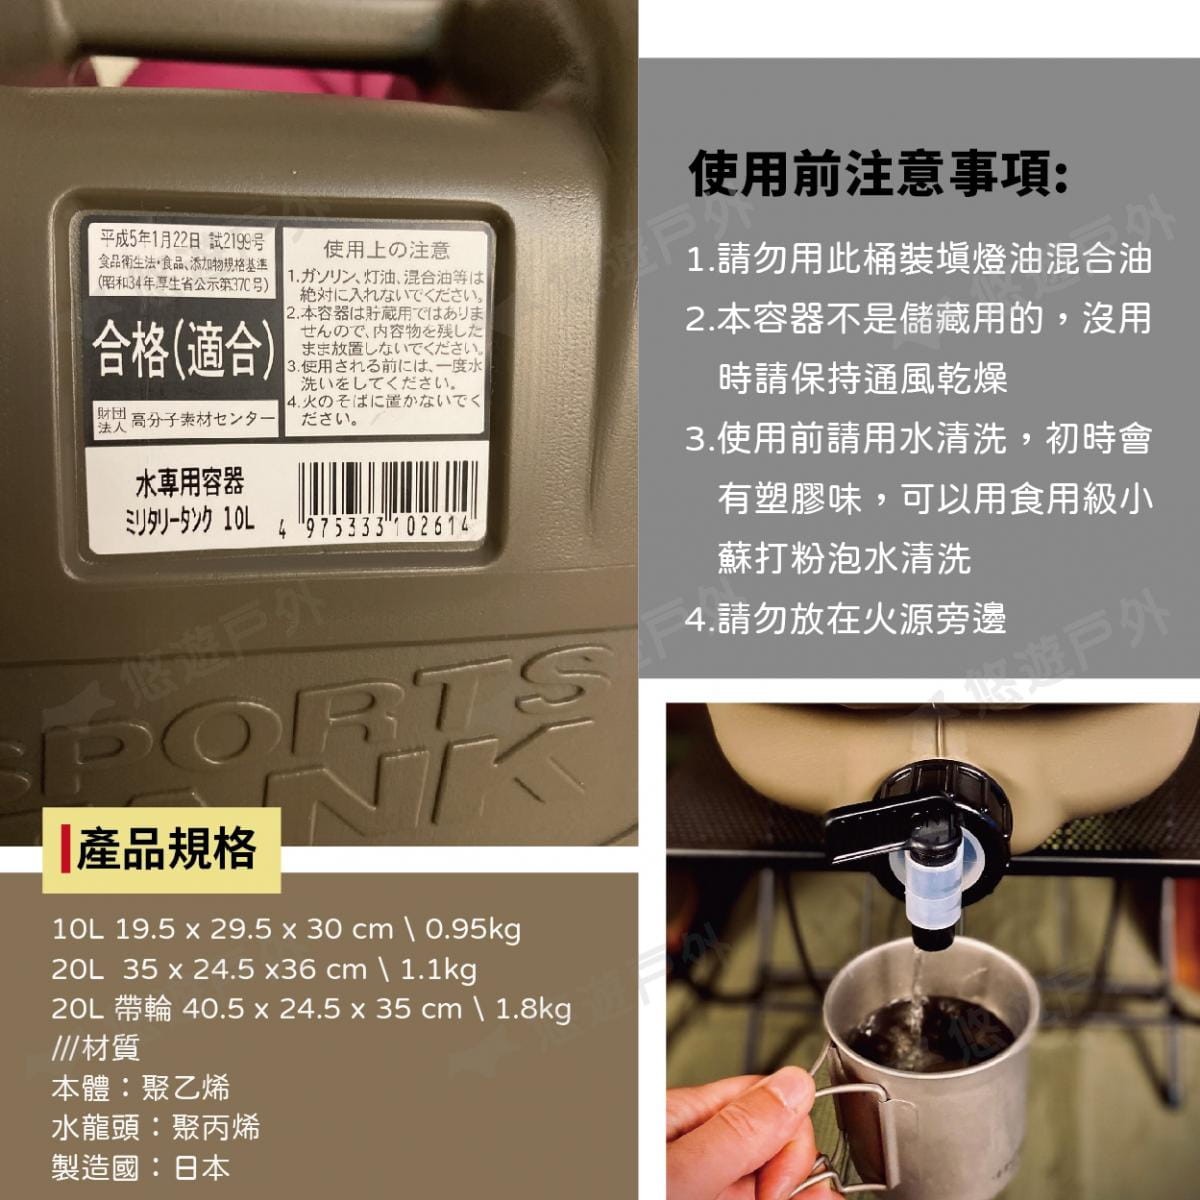 【悠遊】日製水桶 20L 帶輪子 水箱 儲水桶 飲水桶 重型載水器 軍式風 風格選物 多用途水箱 5